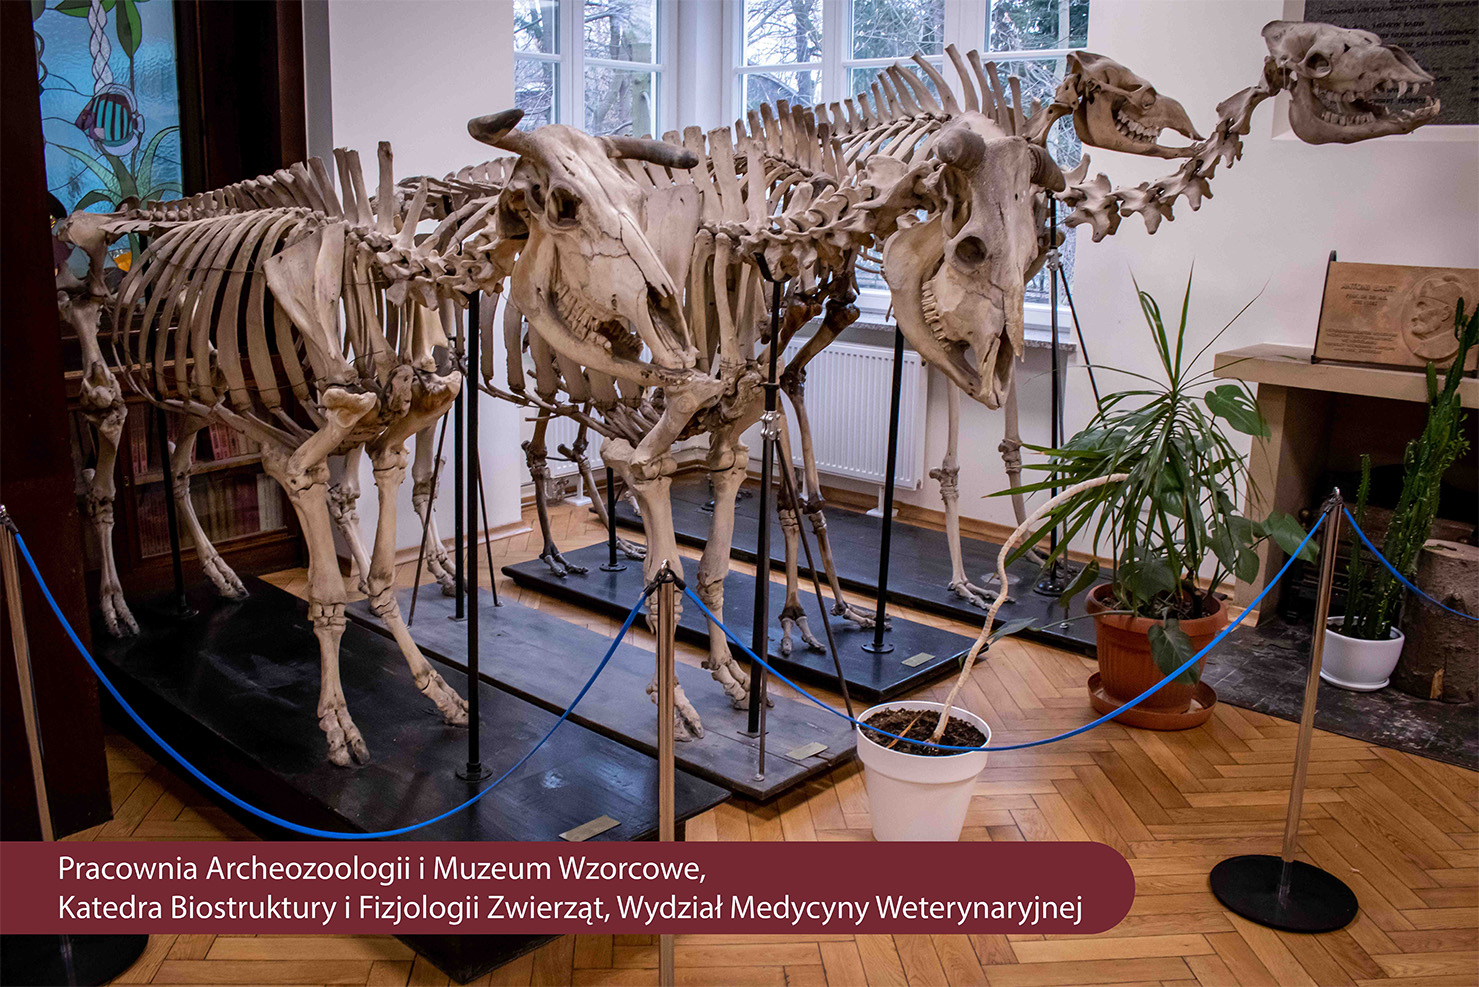 Na zdjęciu pracownia archeozoologii i muzeum - zdjęcia szkieletów zwierząt umieszczone na drewnianych podstawach i kwiaty w doniczkach